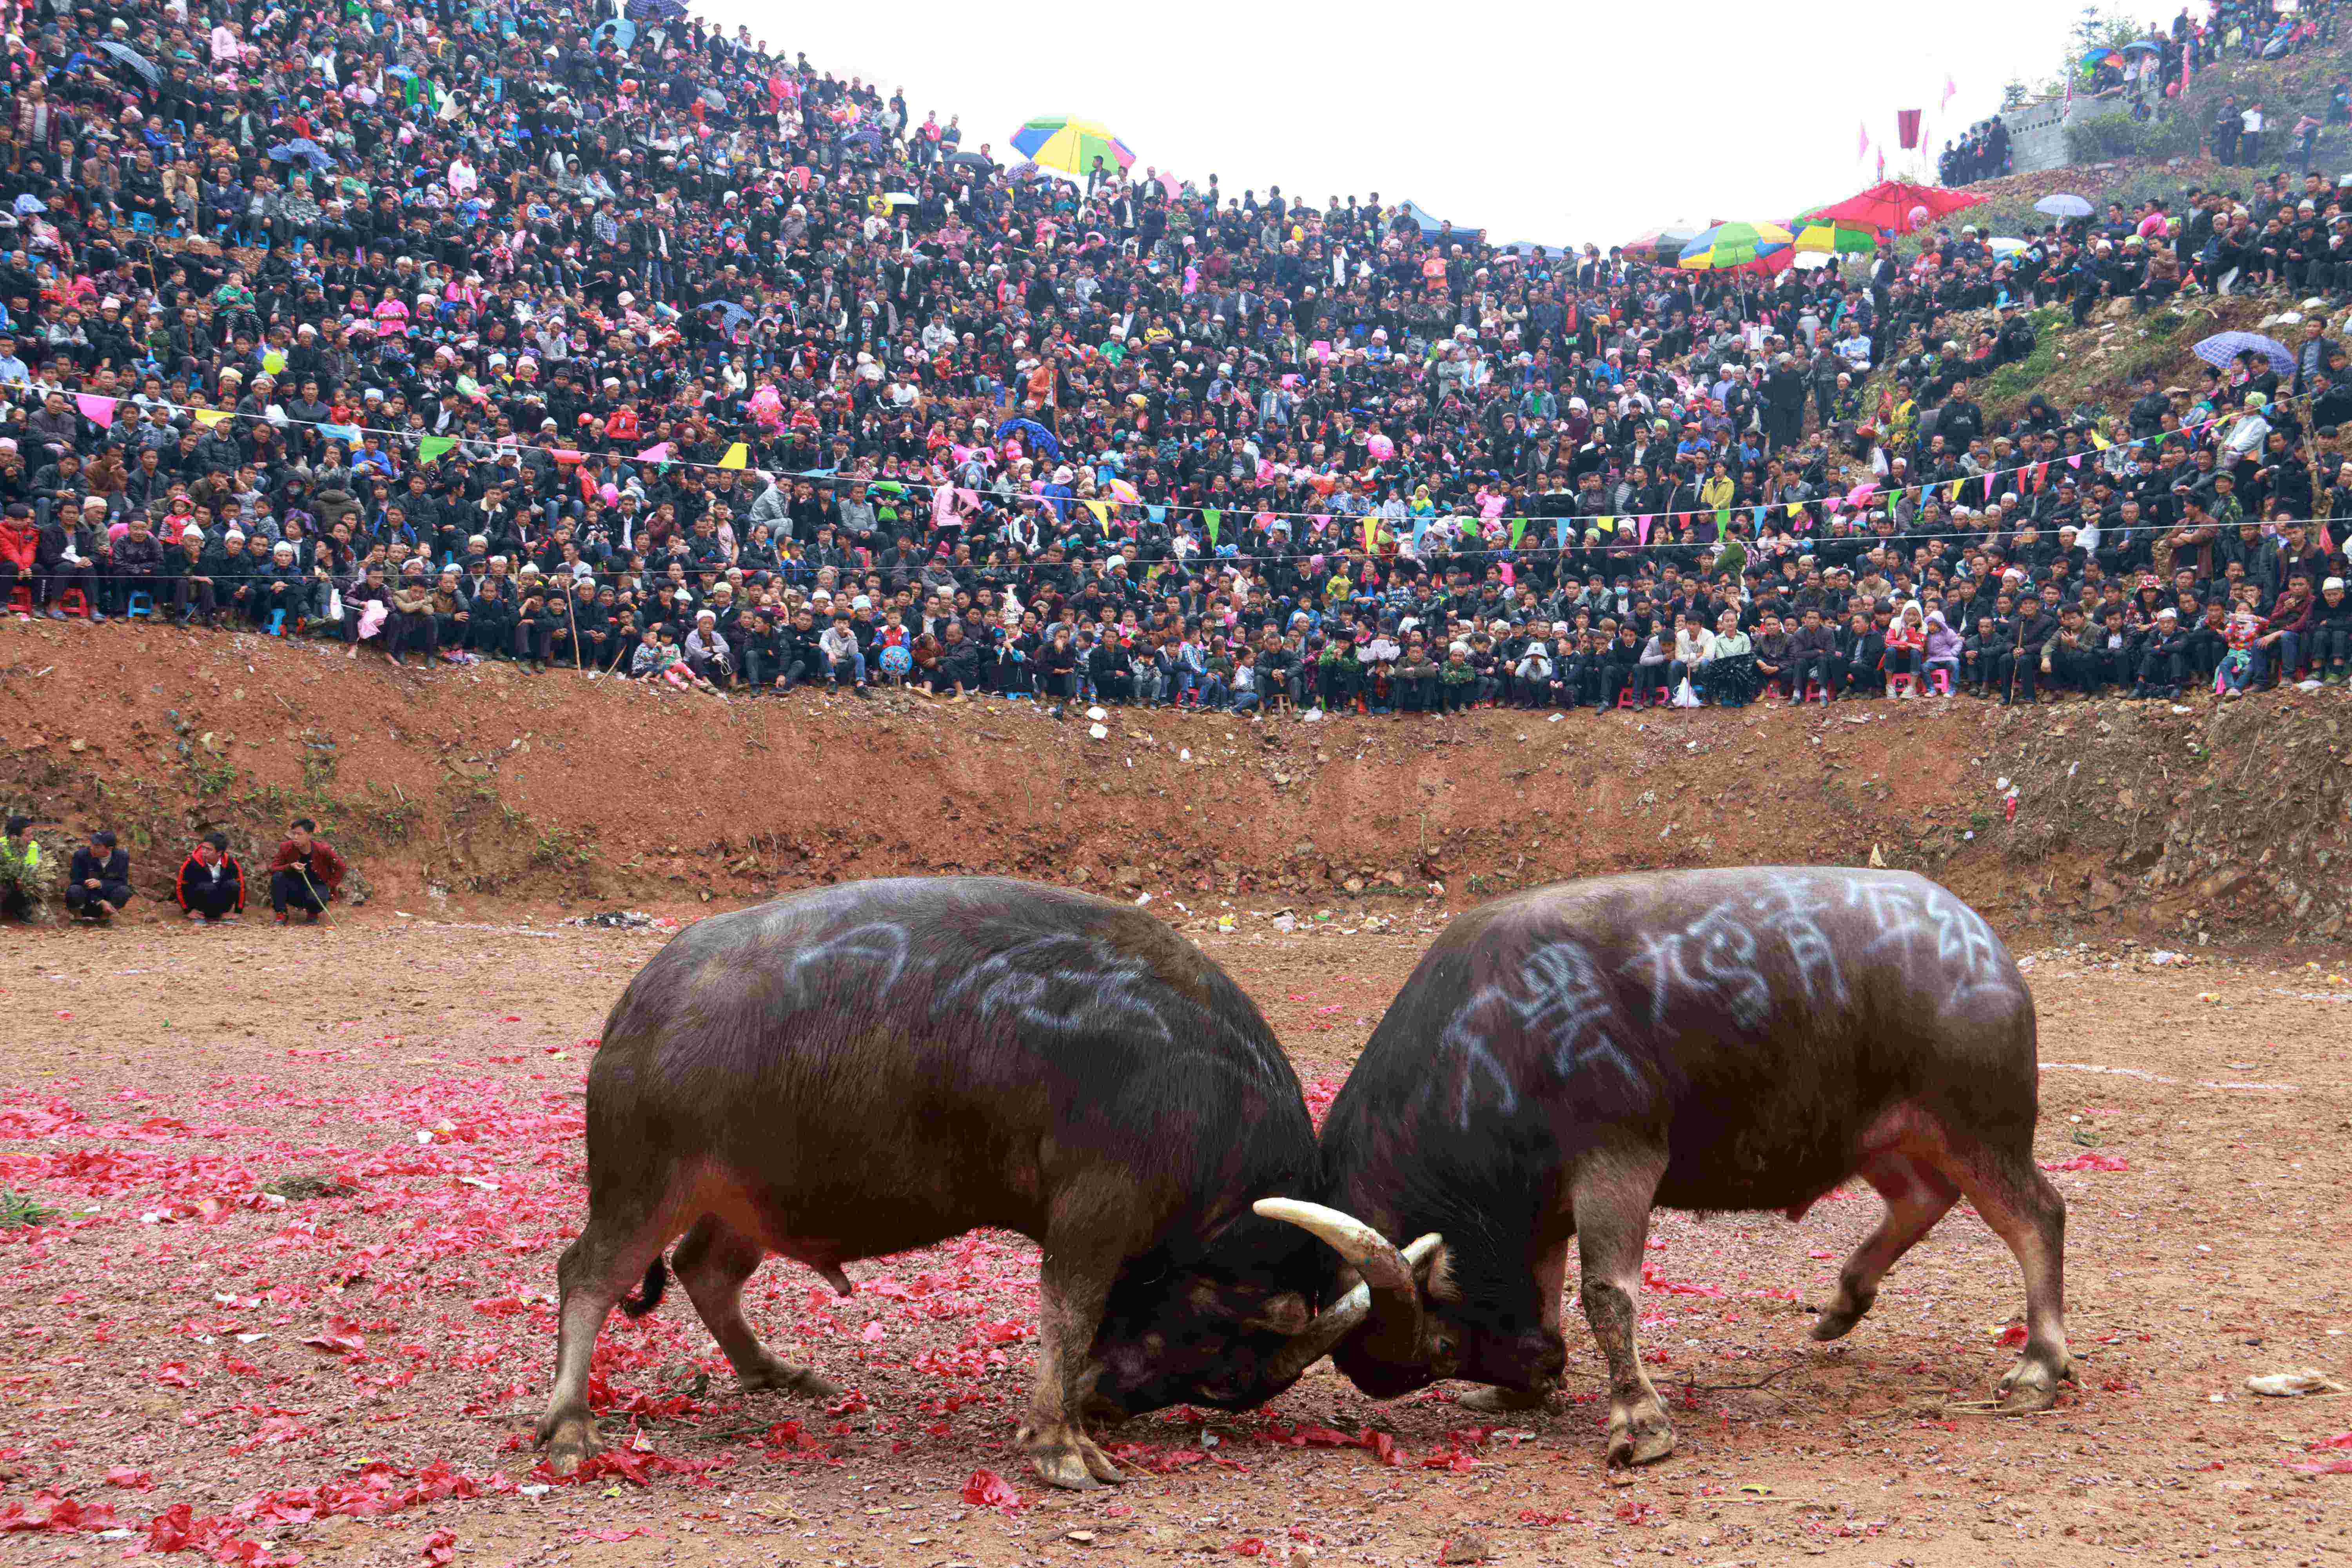 斗牛俗称牛打架,是从江县苗侗民族同胞最喜爱的一项民俗民间竞技